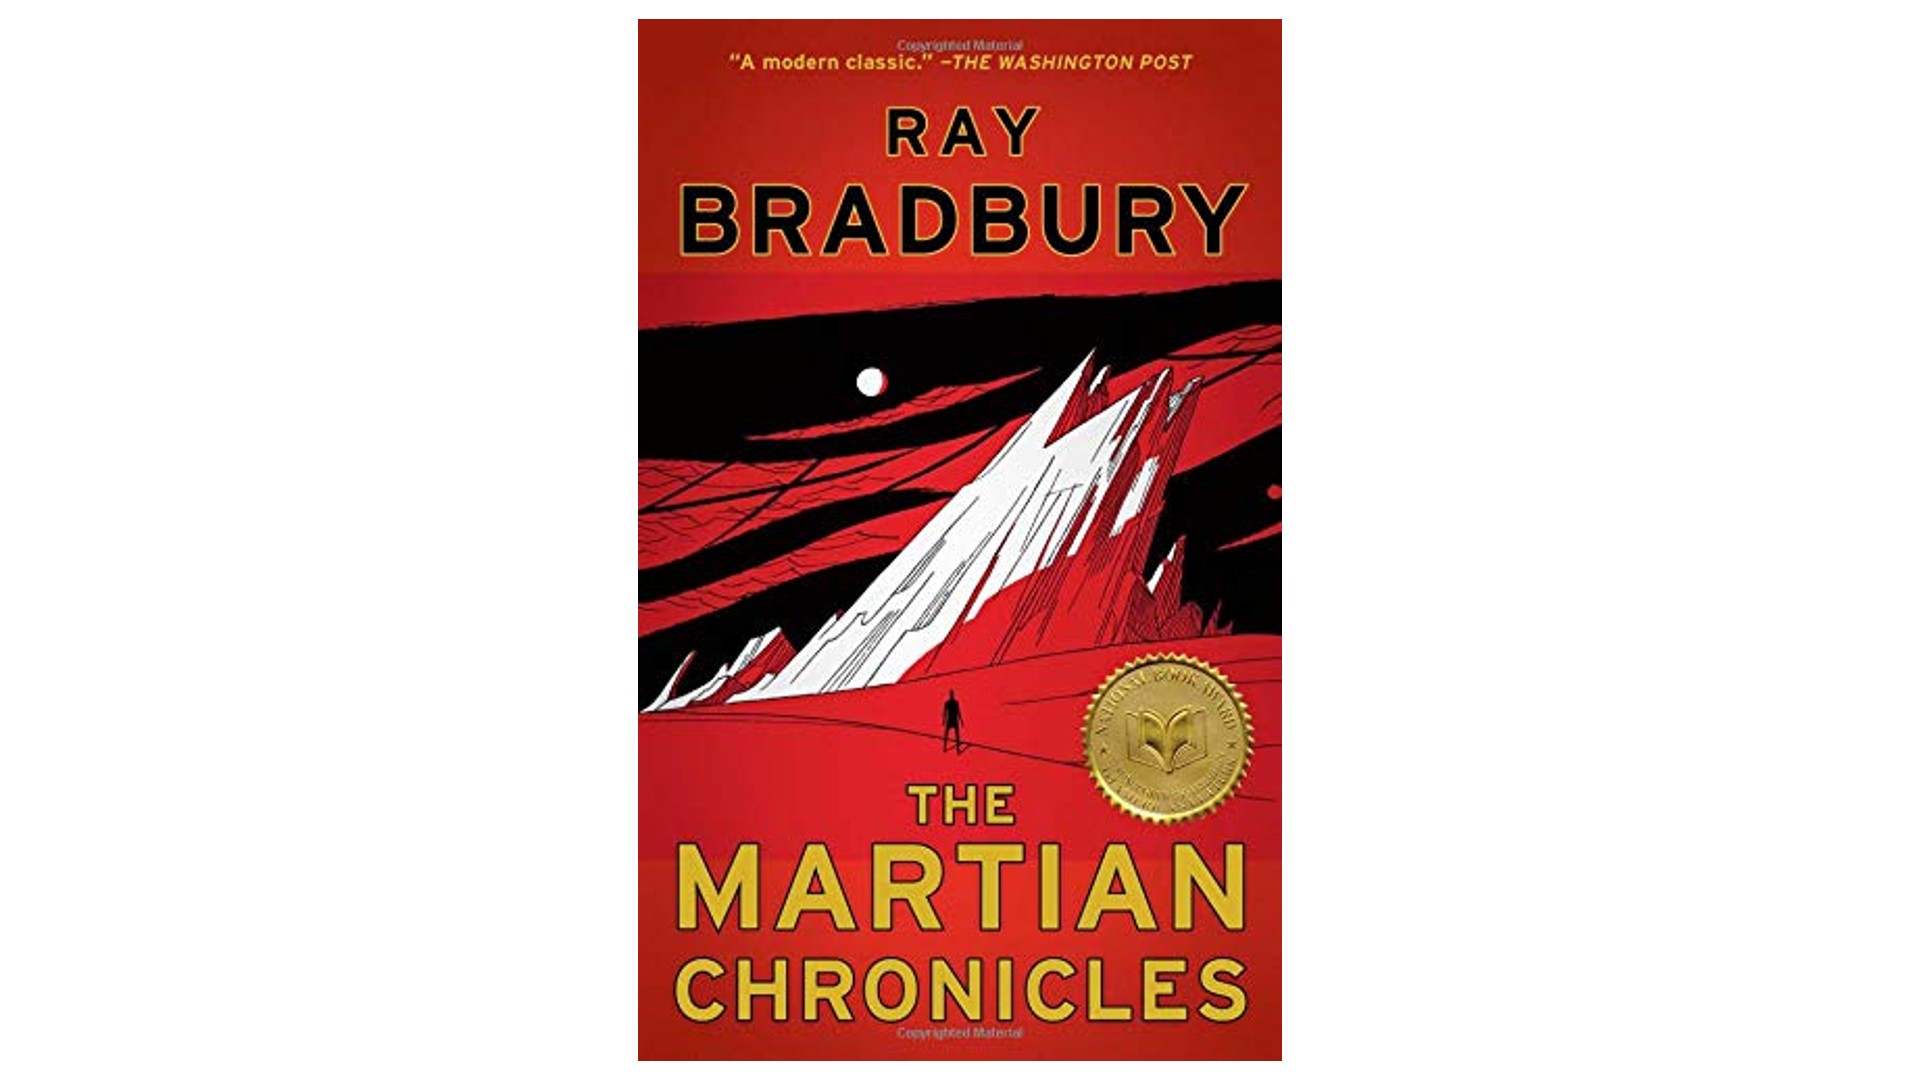 The Martian Chronicles by Ray Bradbury_Doubleday (1951)